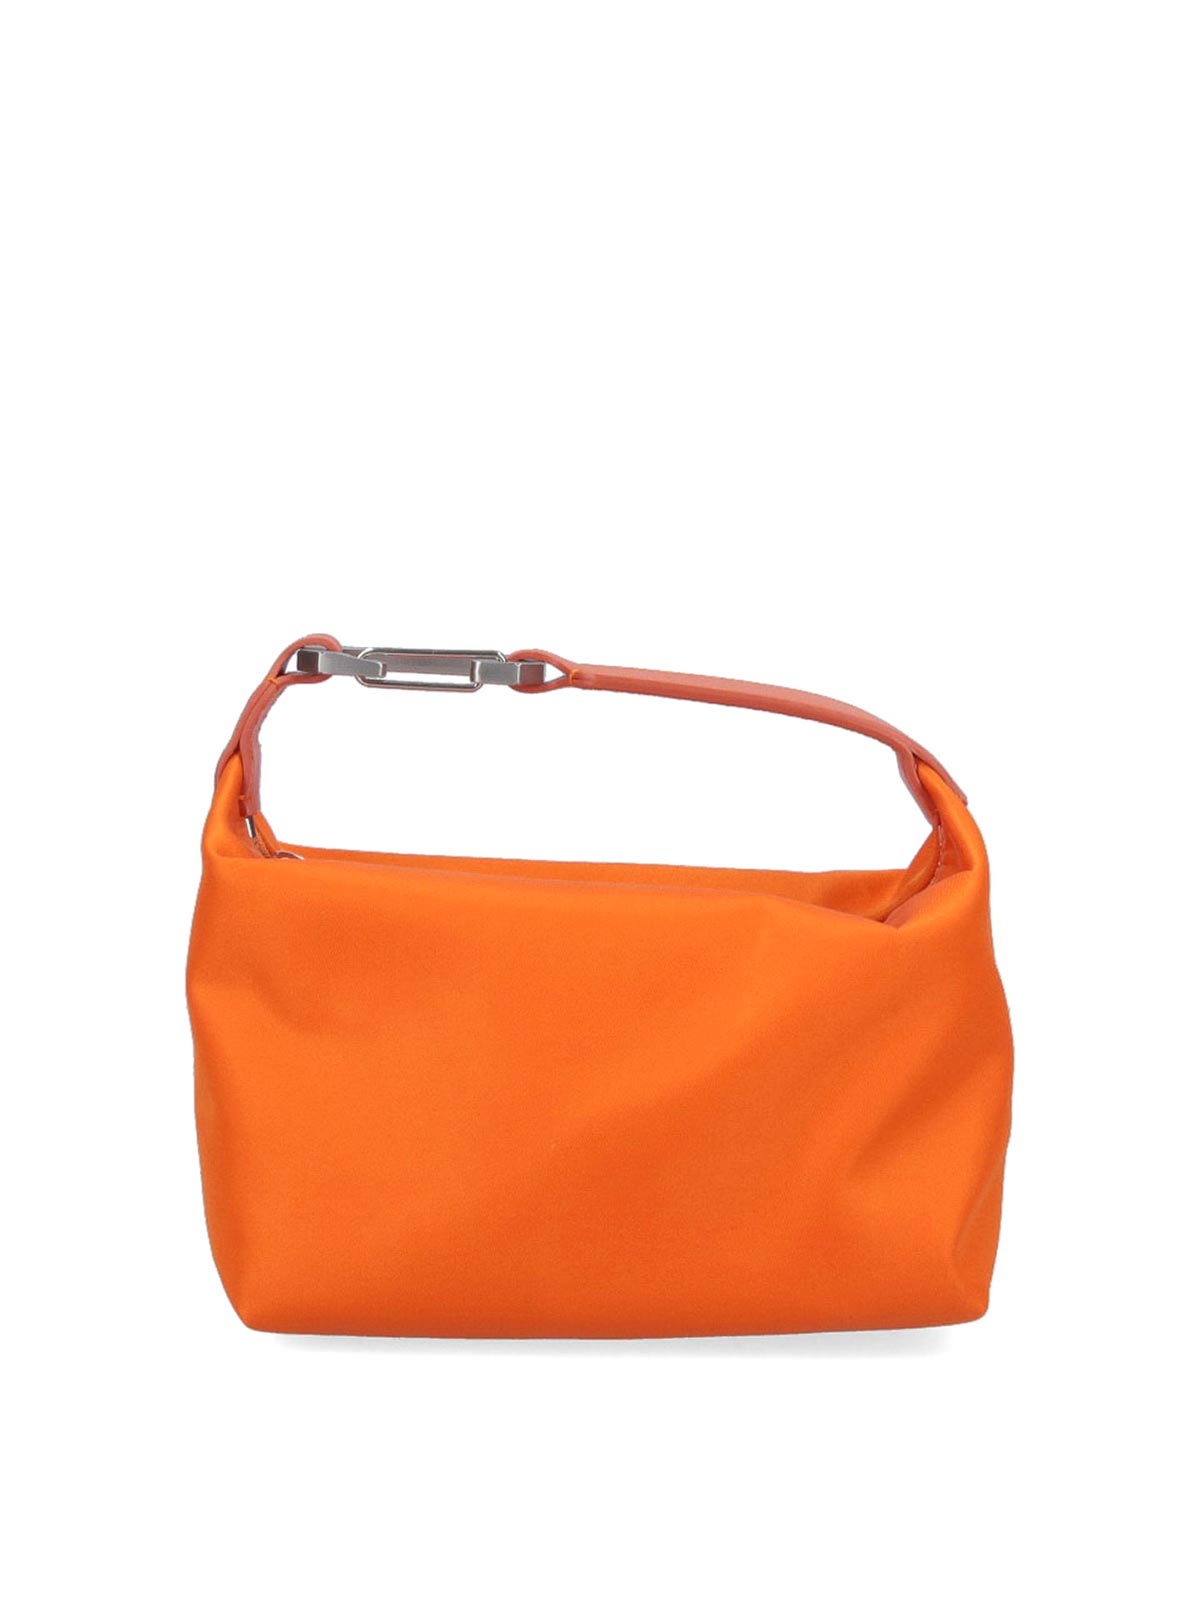 Eéra Handbag In Orange